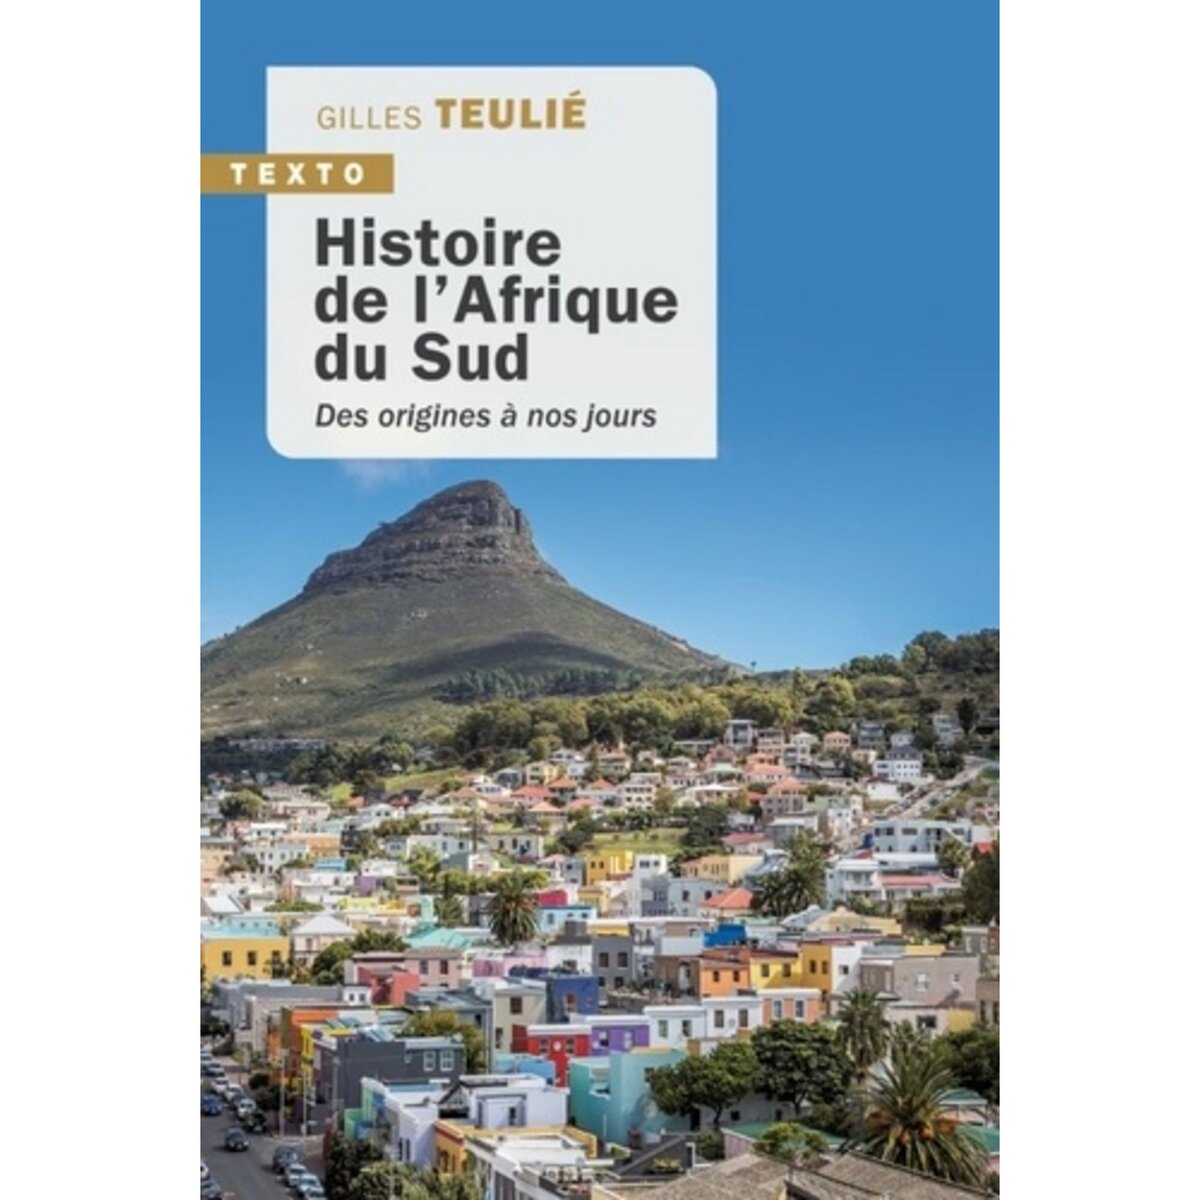  HISTOIRE DE L'AFRIQUE DU SUD. DES ORIGINES A NOS JOURS, Teulié Gilles